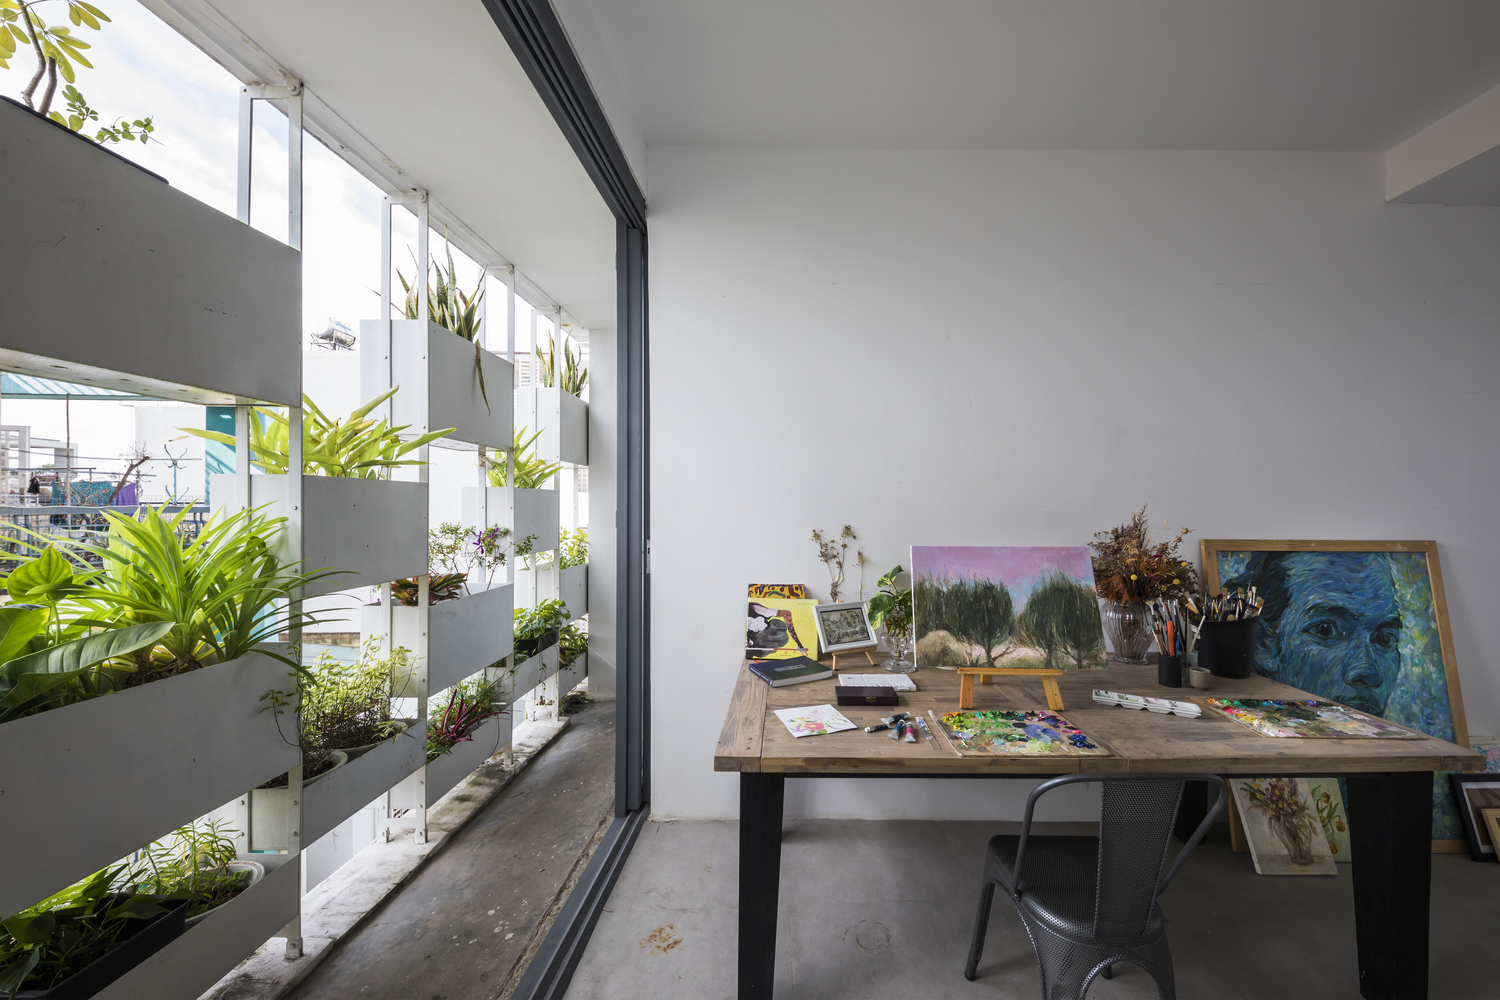 hình ảnh toàn cảnh phòng vẽ trong nhà phố 4 tầng với mặt tiền là các chậu cây trồng giúp hạn chế nắng gắt, tiếng ồn, bụi và tạo sự riêng tư cần thiết